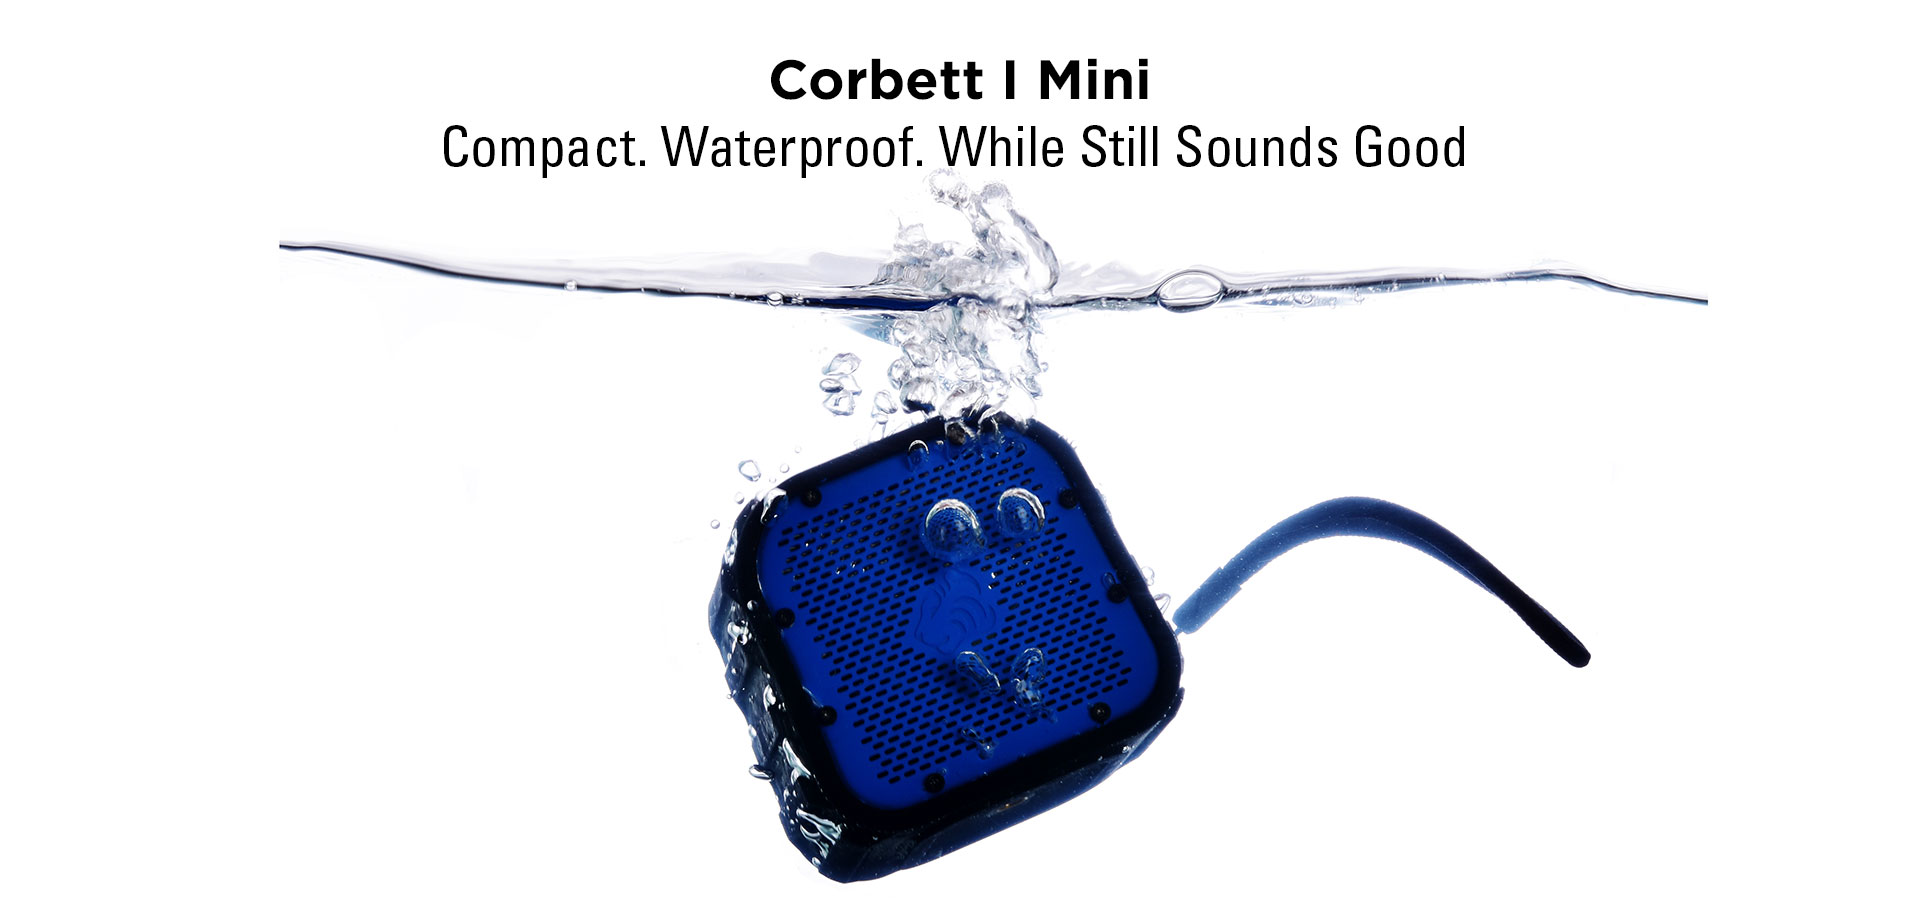 Corbett I Mini